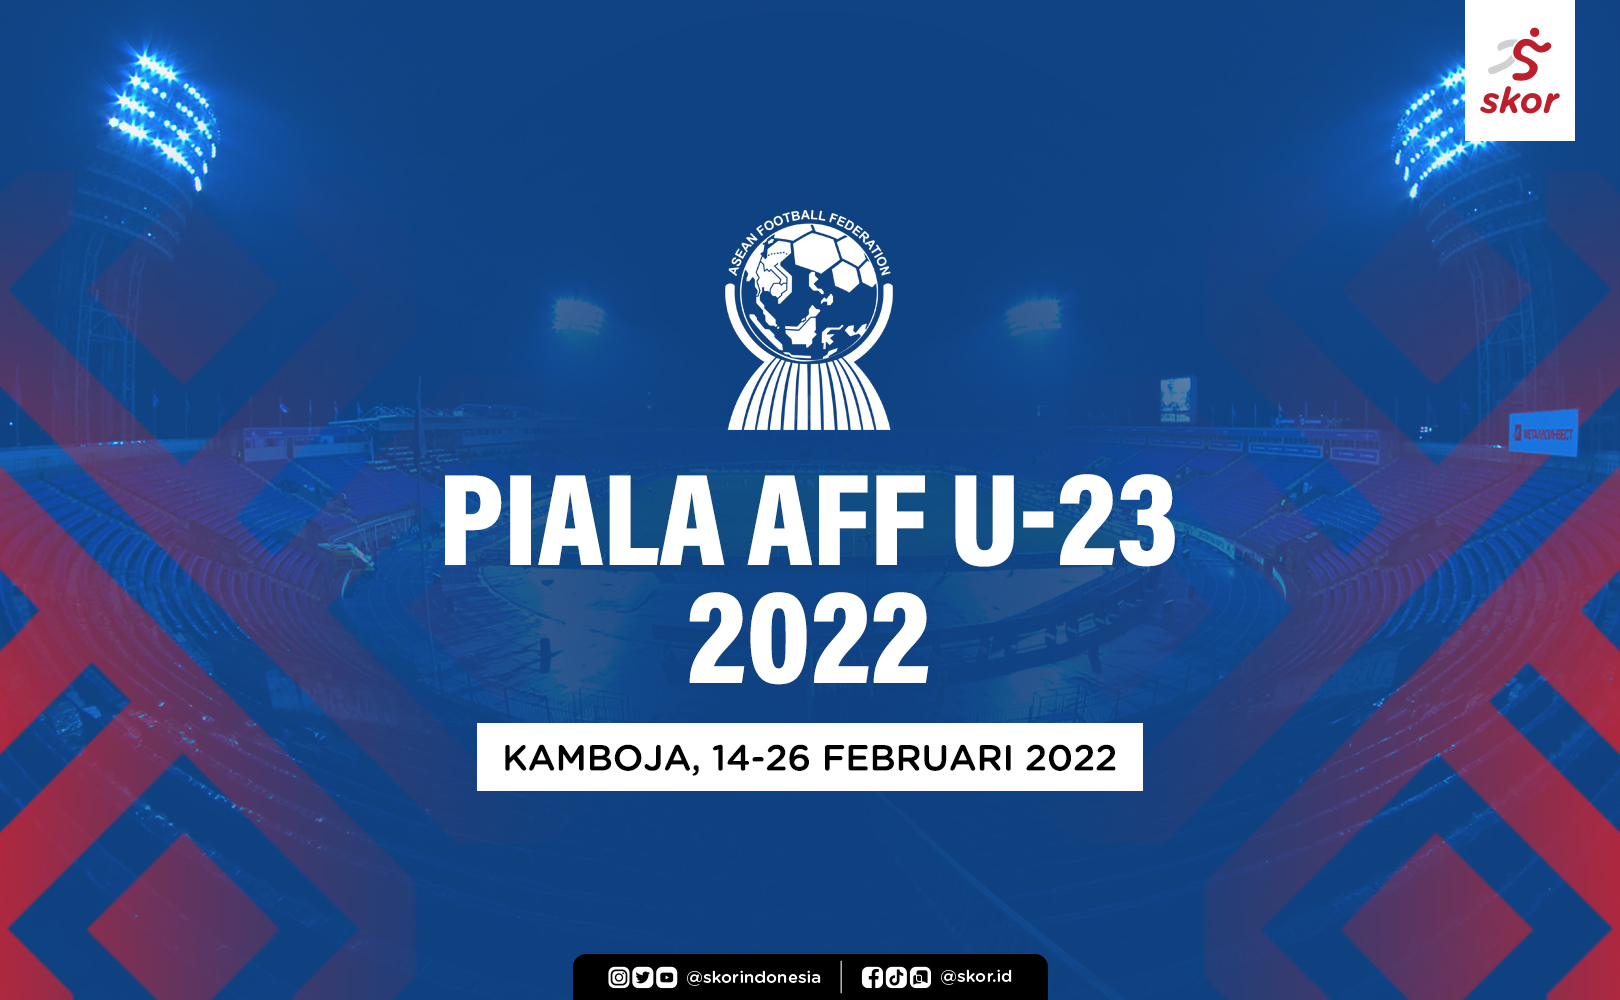 Piala AFF U-23 2022: Jegal Kamboja, Timor Leste Melenggang ke Semifinal